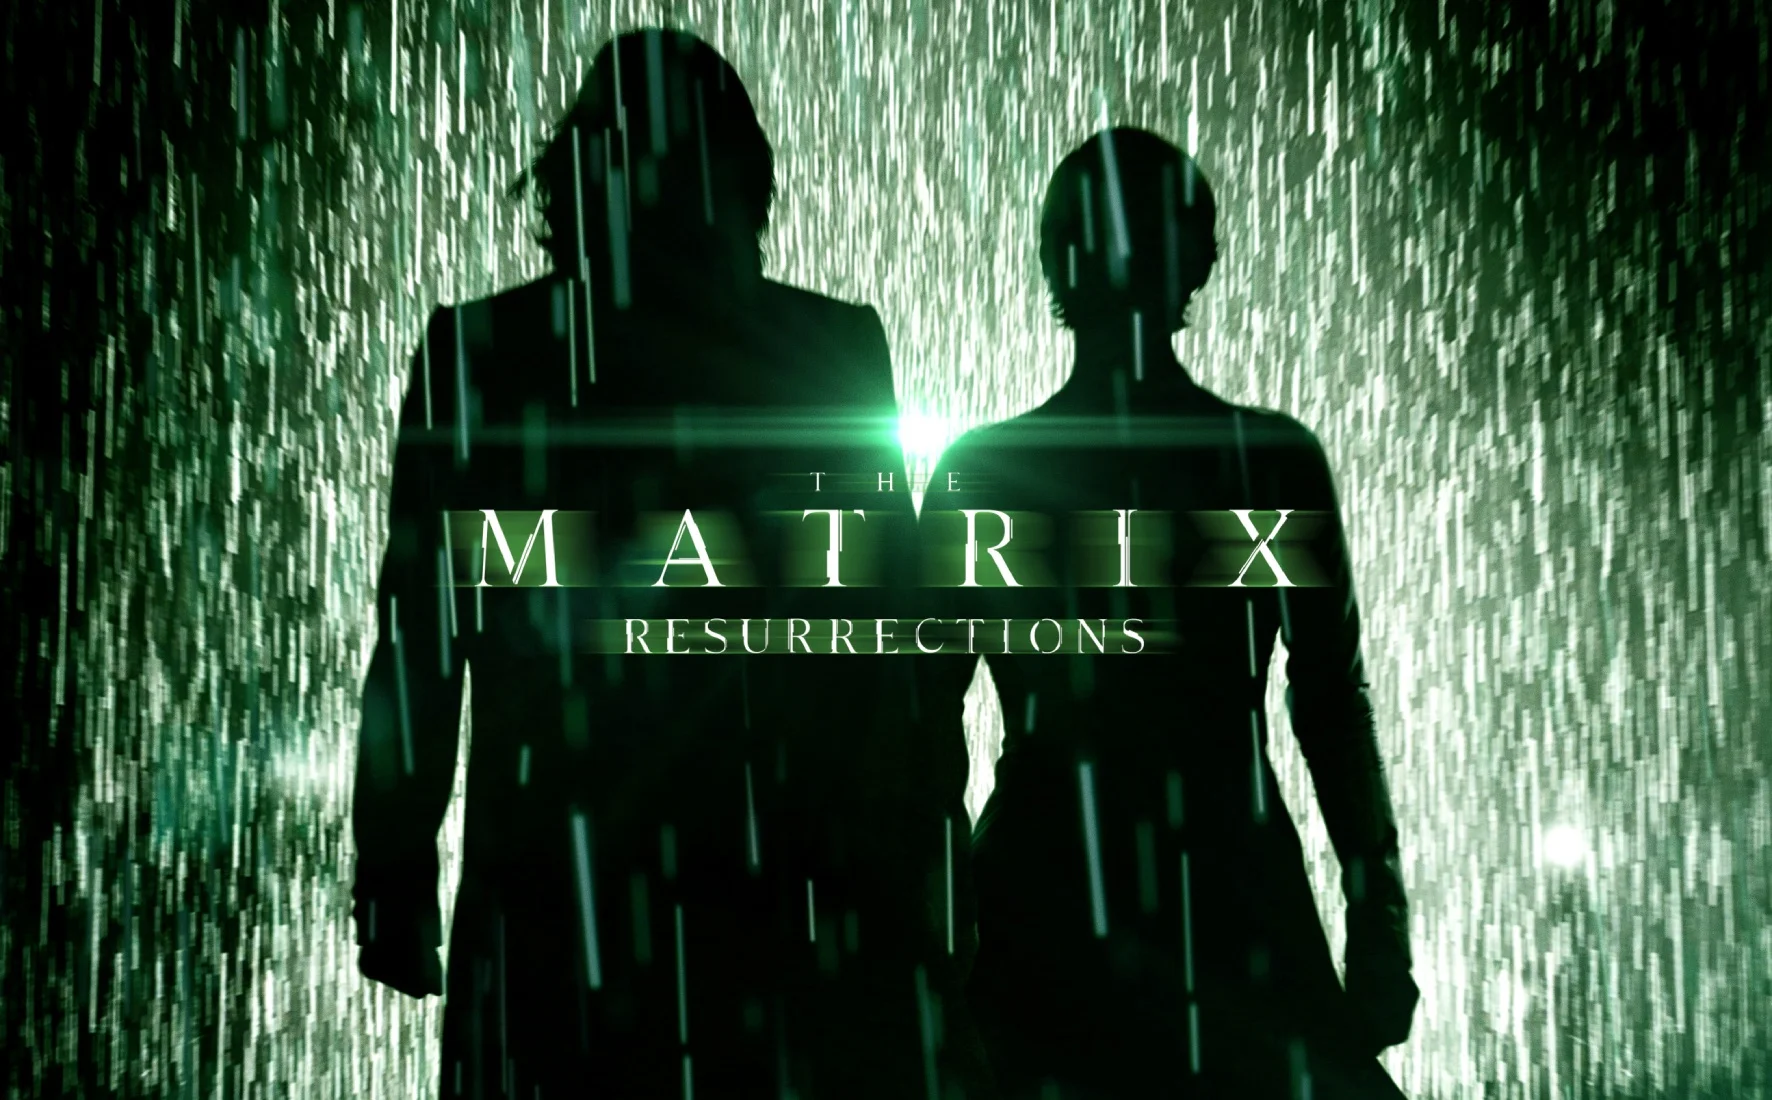 Вышел свежий постер новой «Матрицы» с силуэтами Нео и Тринити на фоне дождя - изображение обложка